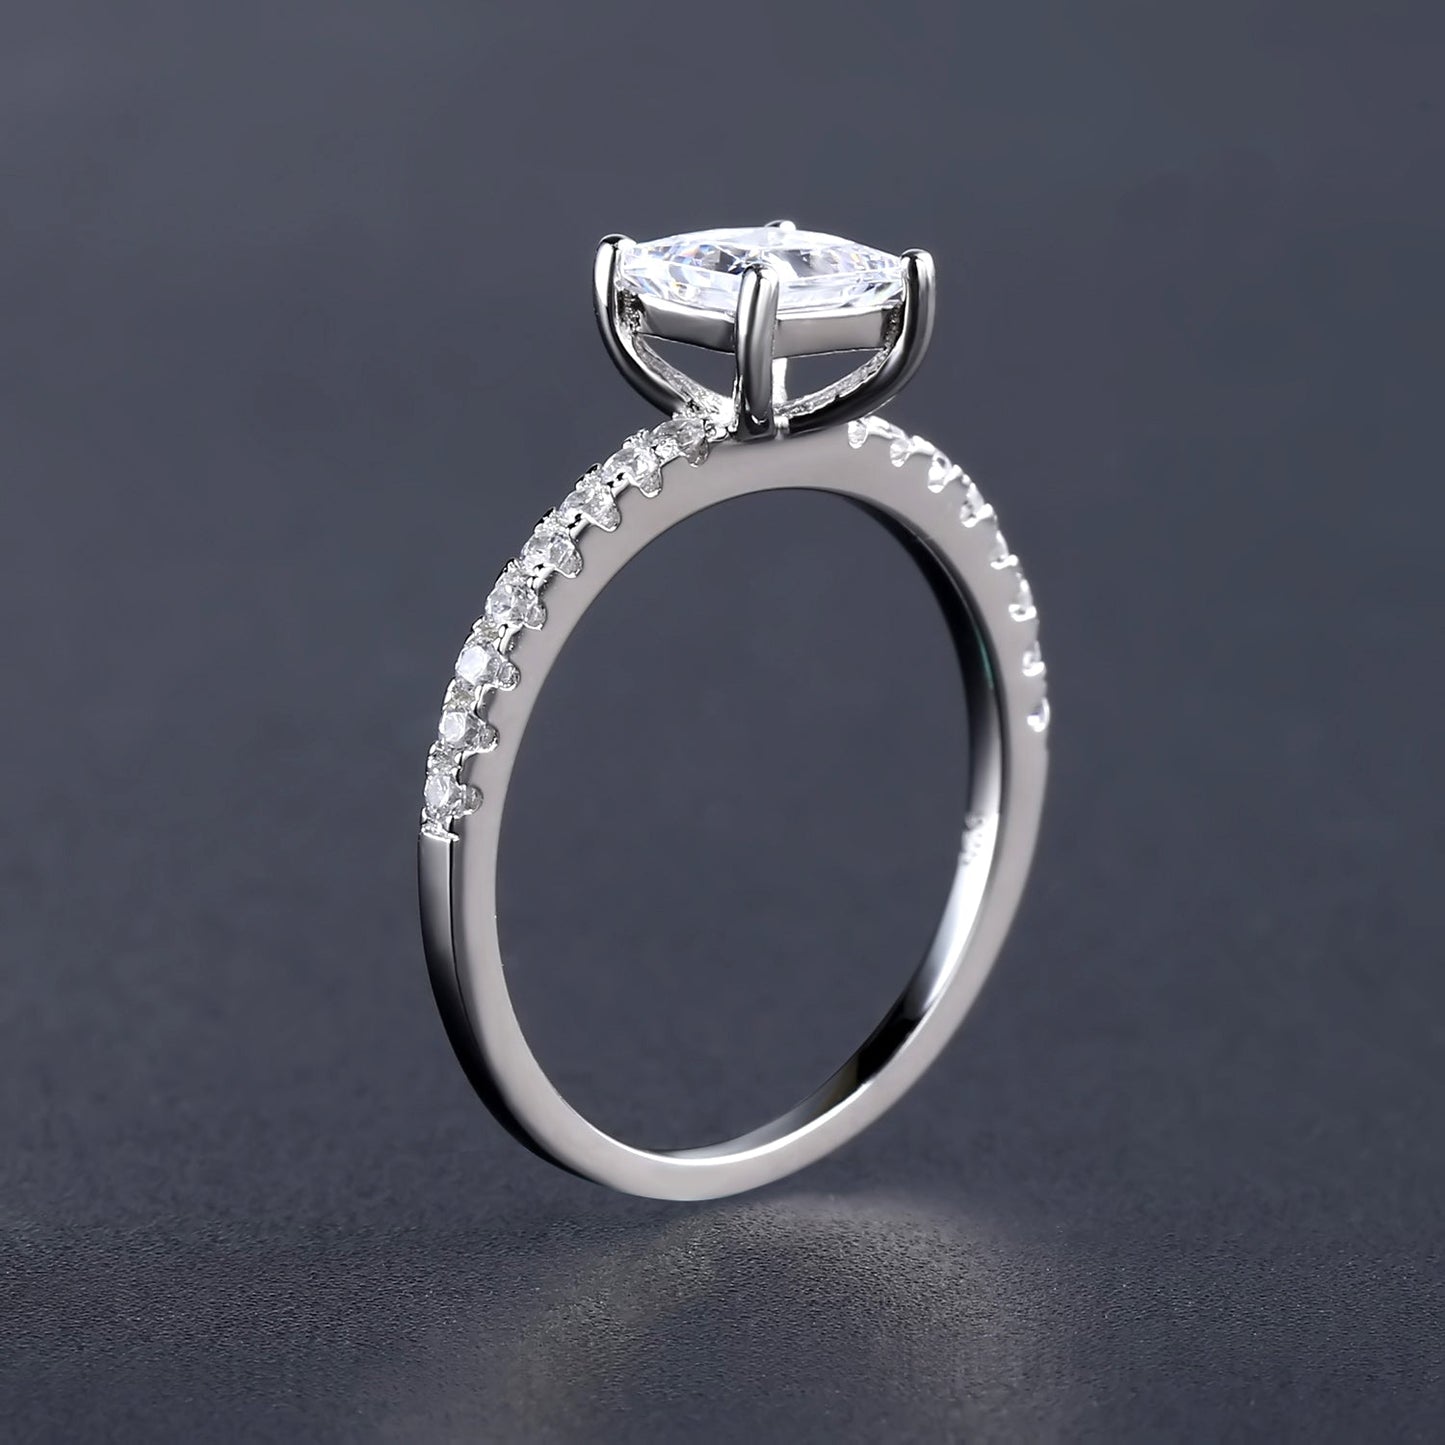 Elegant 1.20ct Princess Cut Moissanite Engagement Ring Set in 9ct White Gold